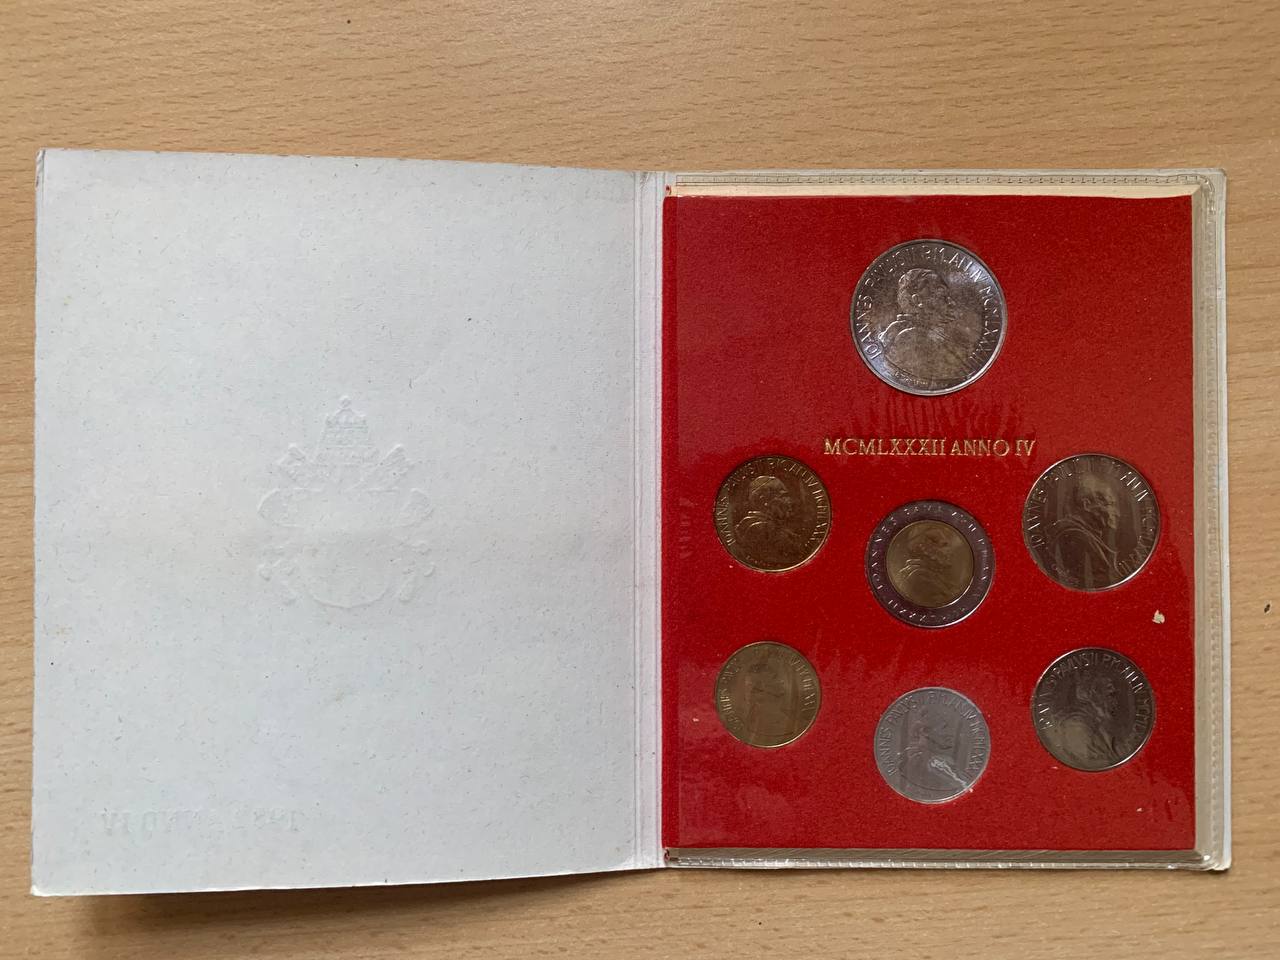  Jahresset von Vatikan 1982 BU (7 Münzen)   